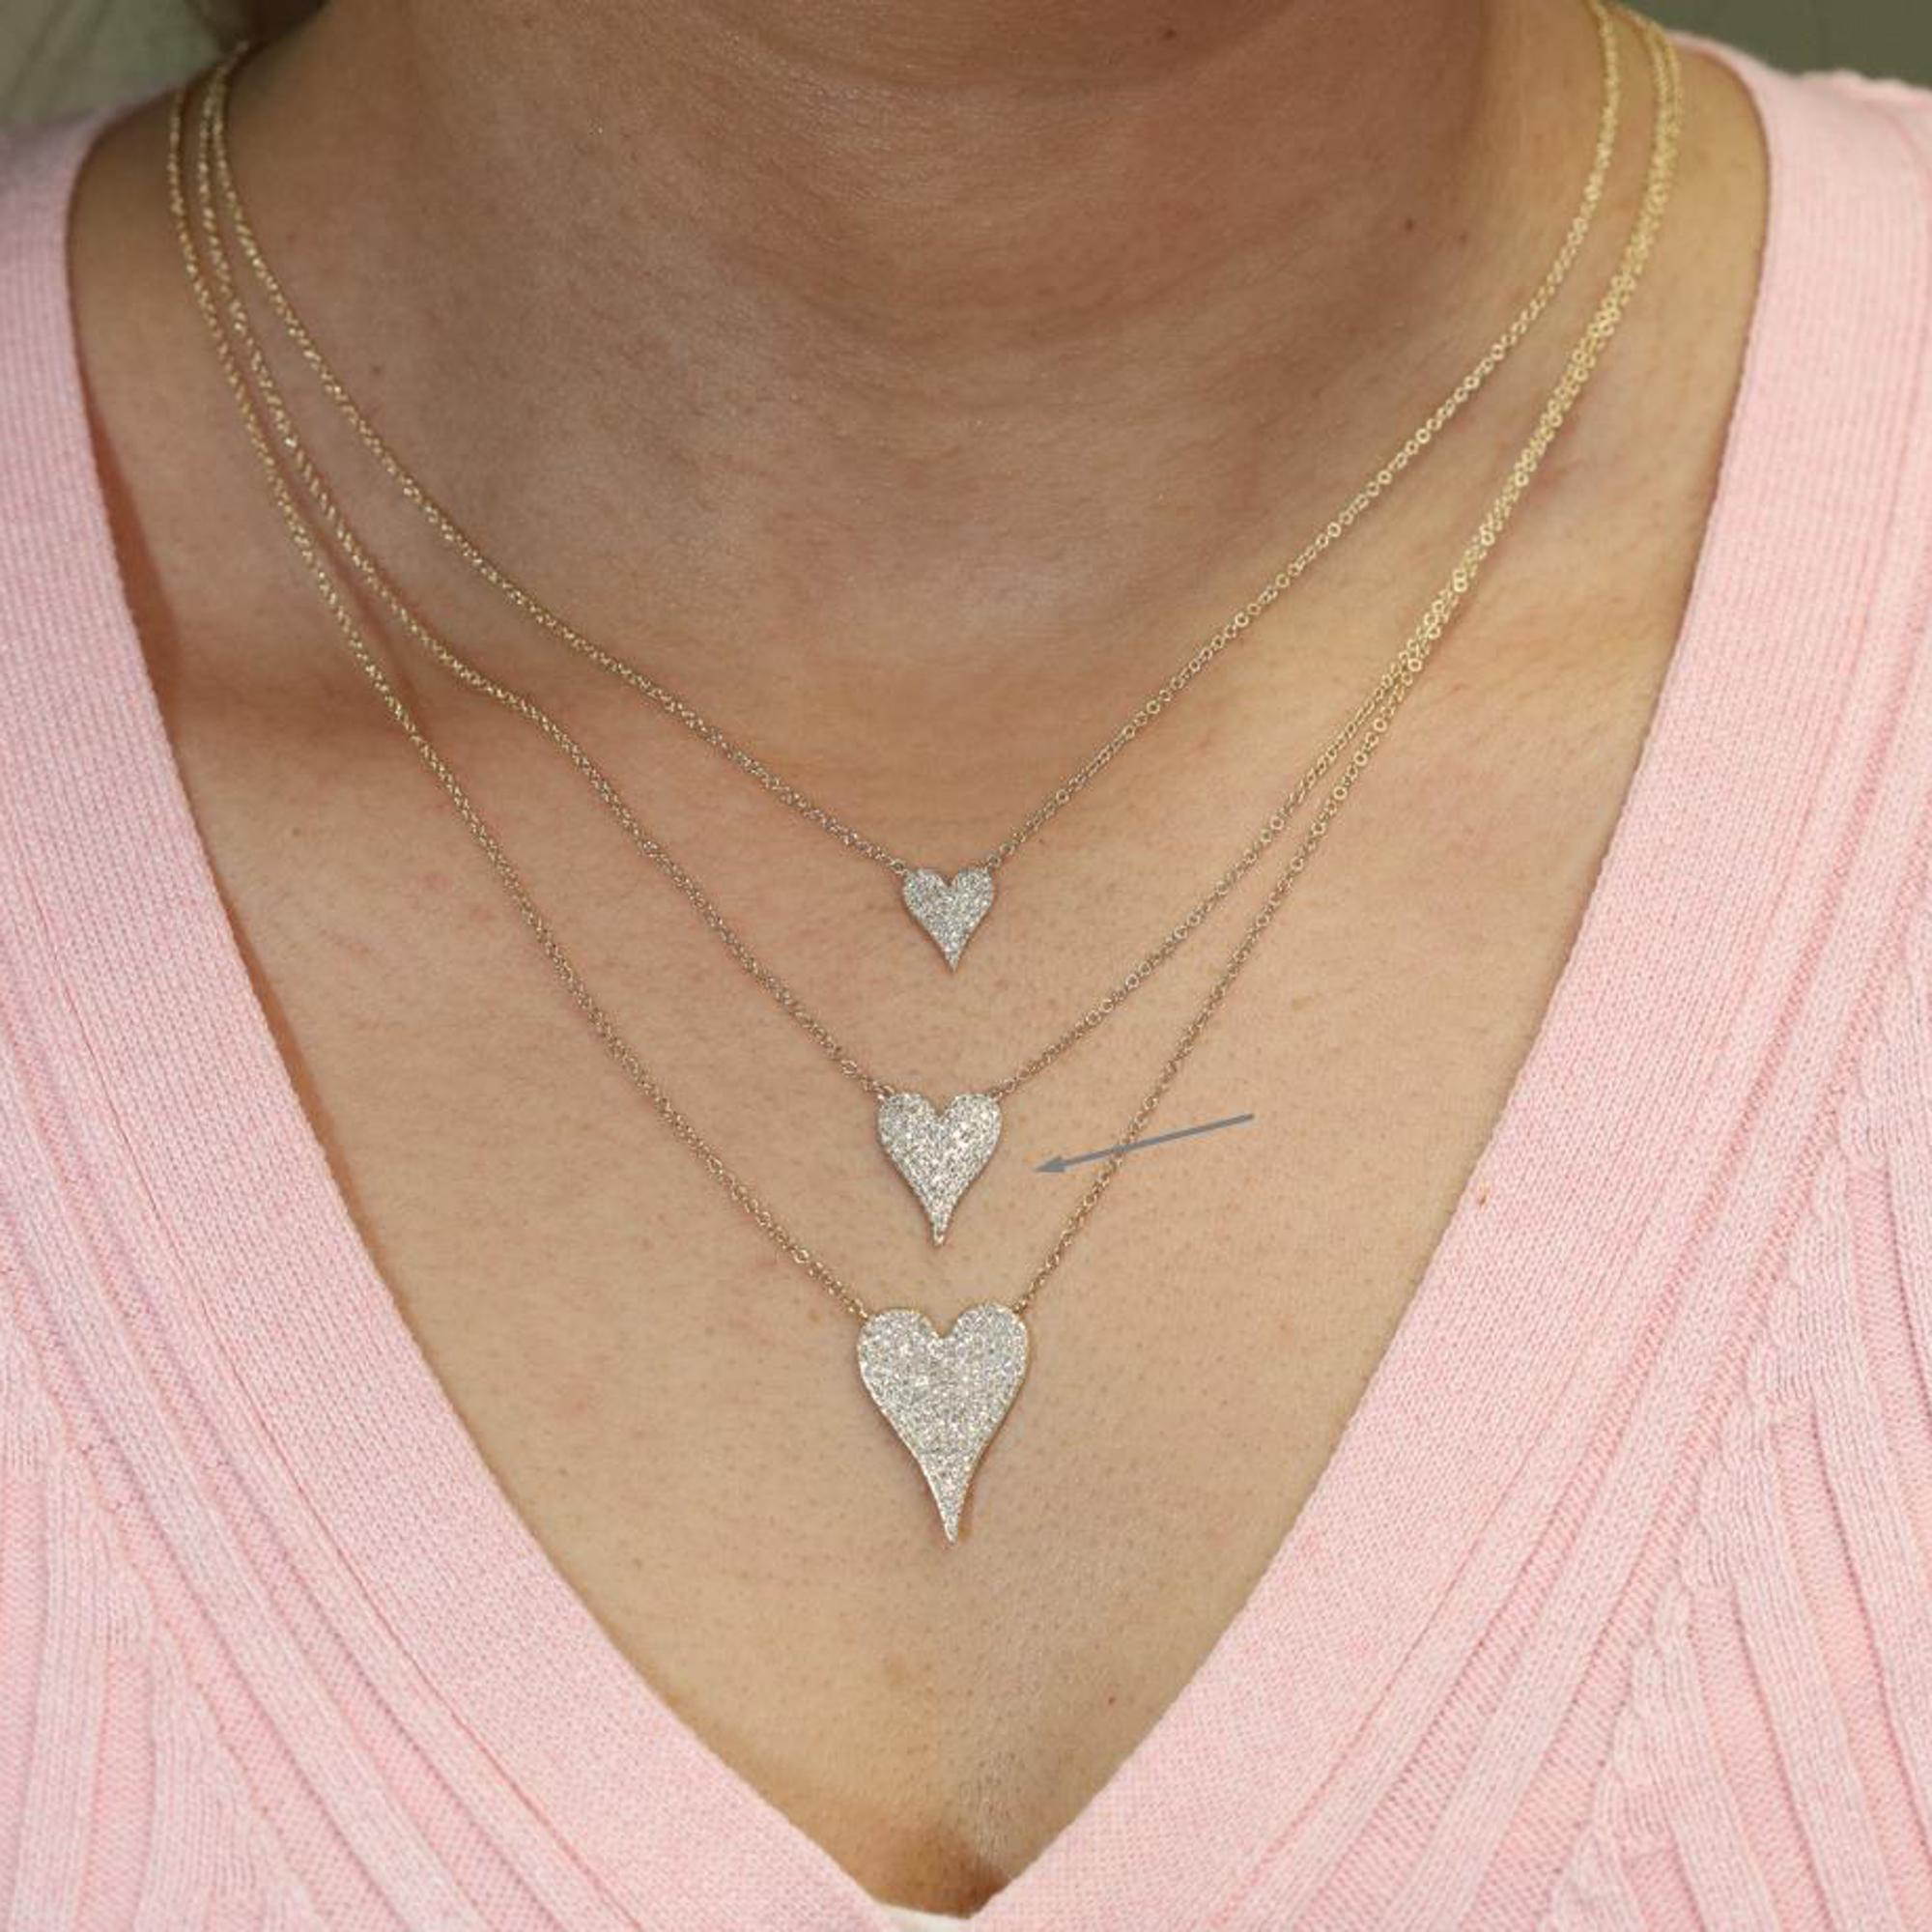 Round Cut Rachel Koen Pave Diamond Heart Pendant Necklace 14K Yellow Gold 0.21cttw For Sale